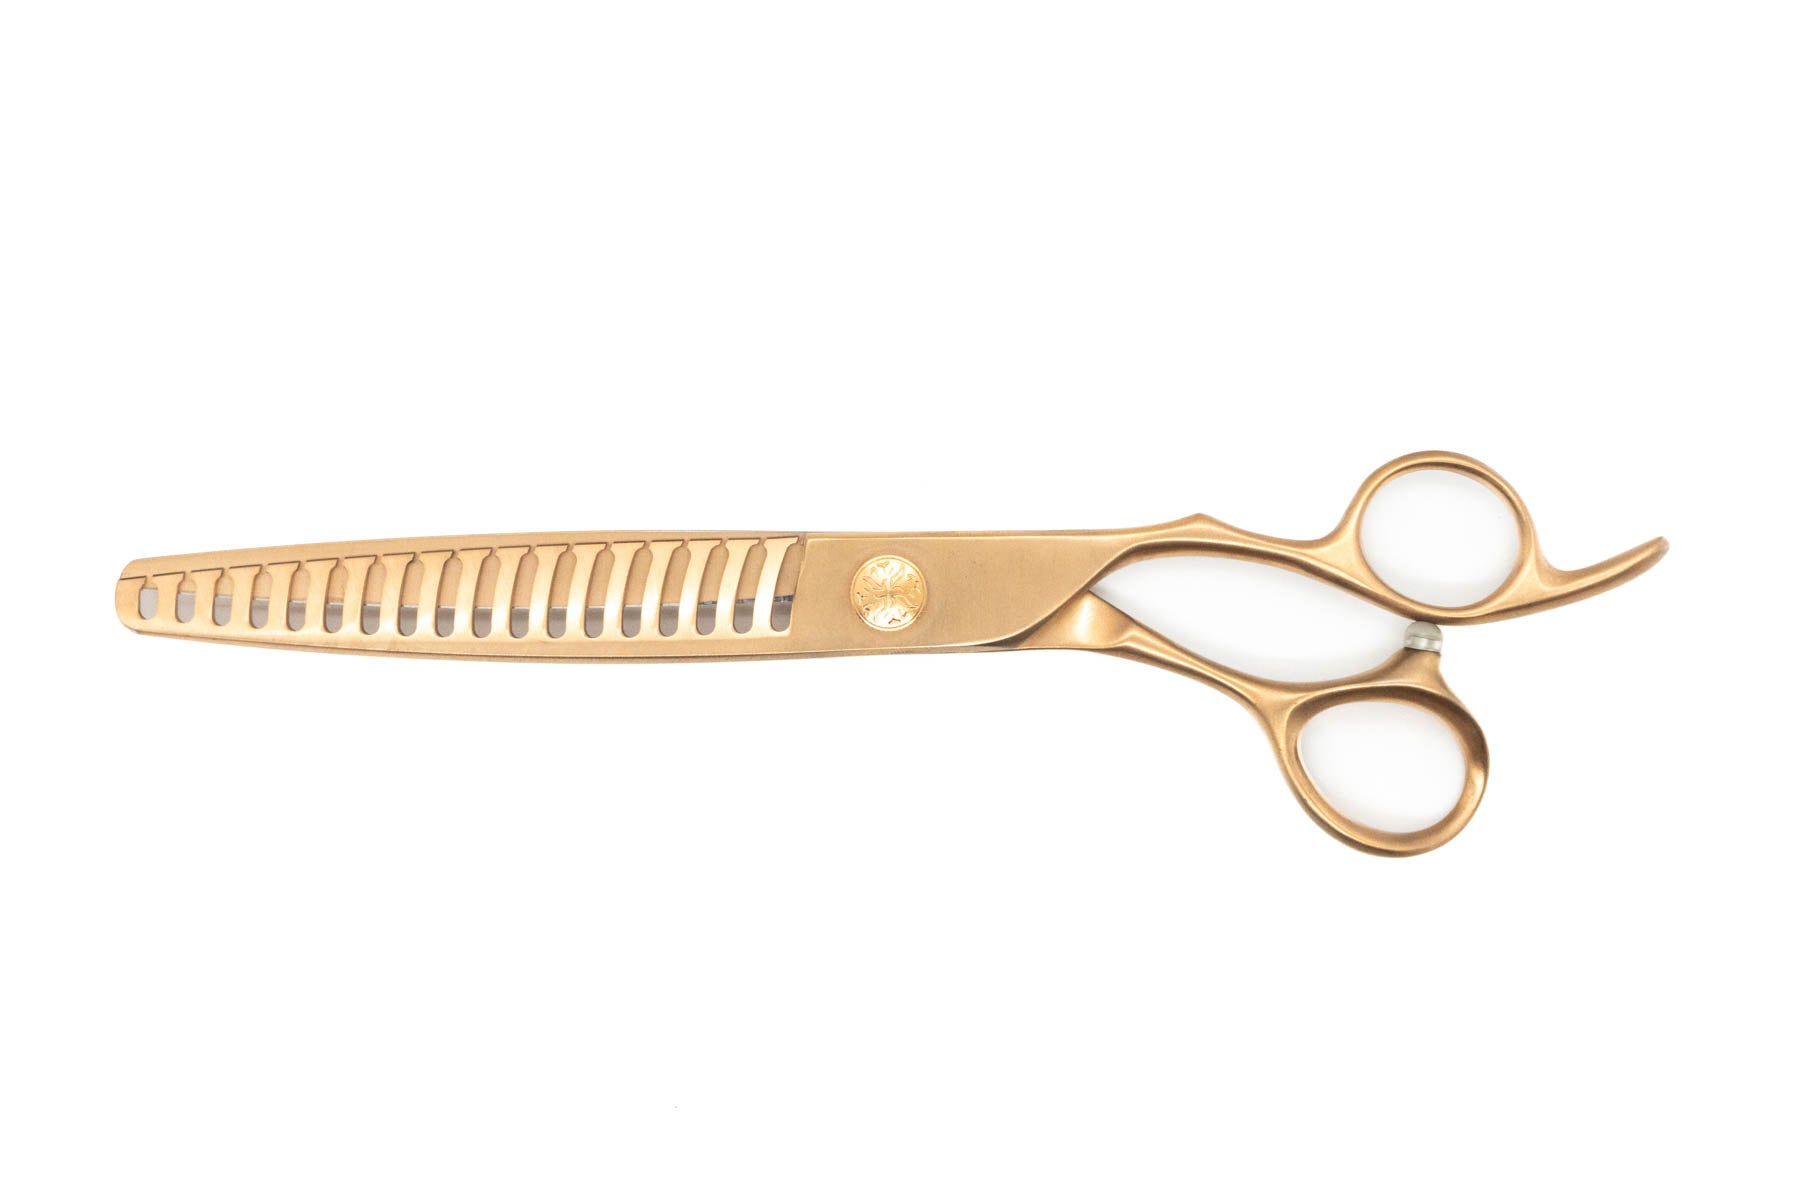 Aspen Lt Rose Gold Pet Grooming 7.5 inch 'CHUNKER' Thinning Scissor